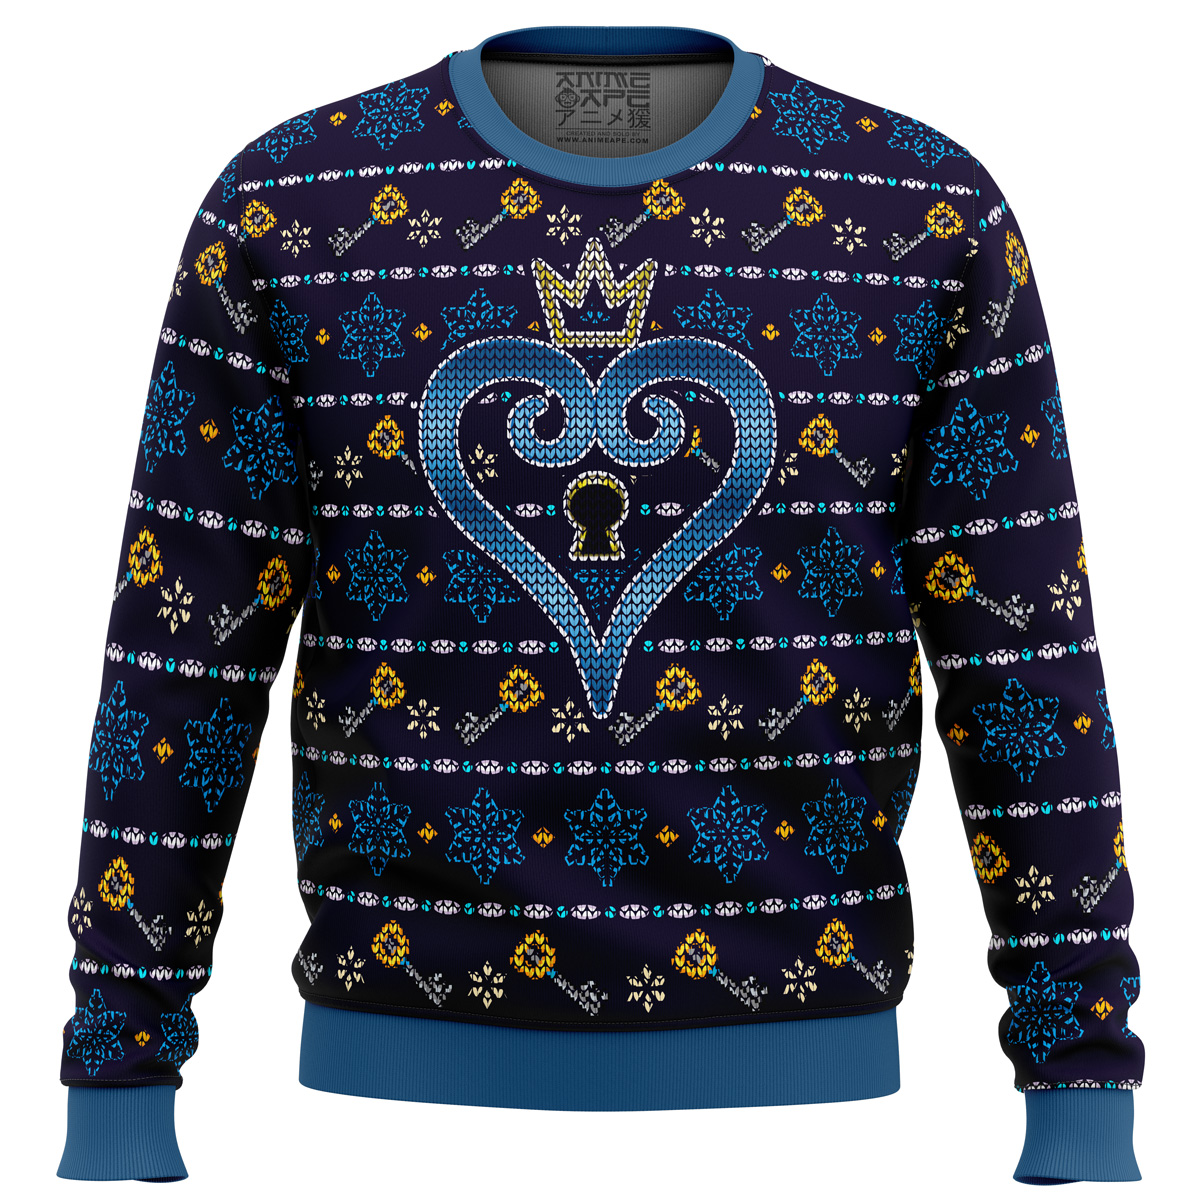 keyblade sora kingdom hearts ugly christmas sweater ana2207 3310 - Fandomaniax Store